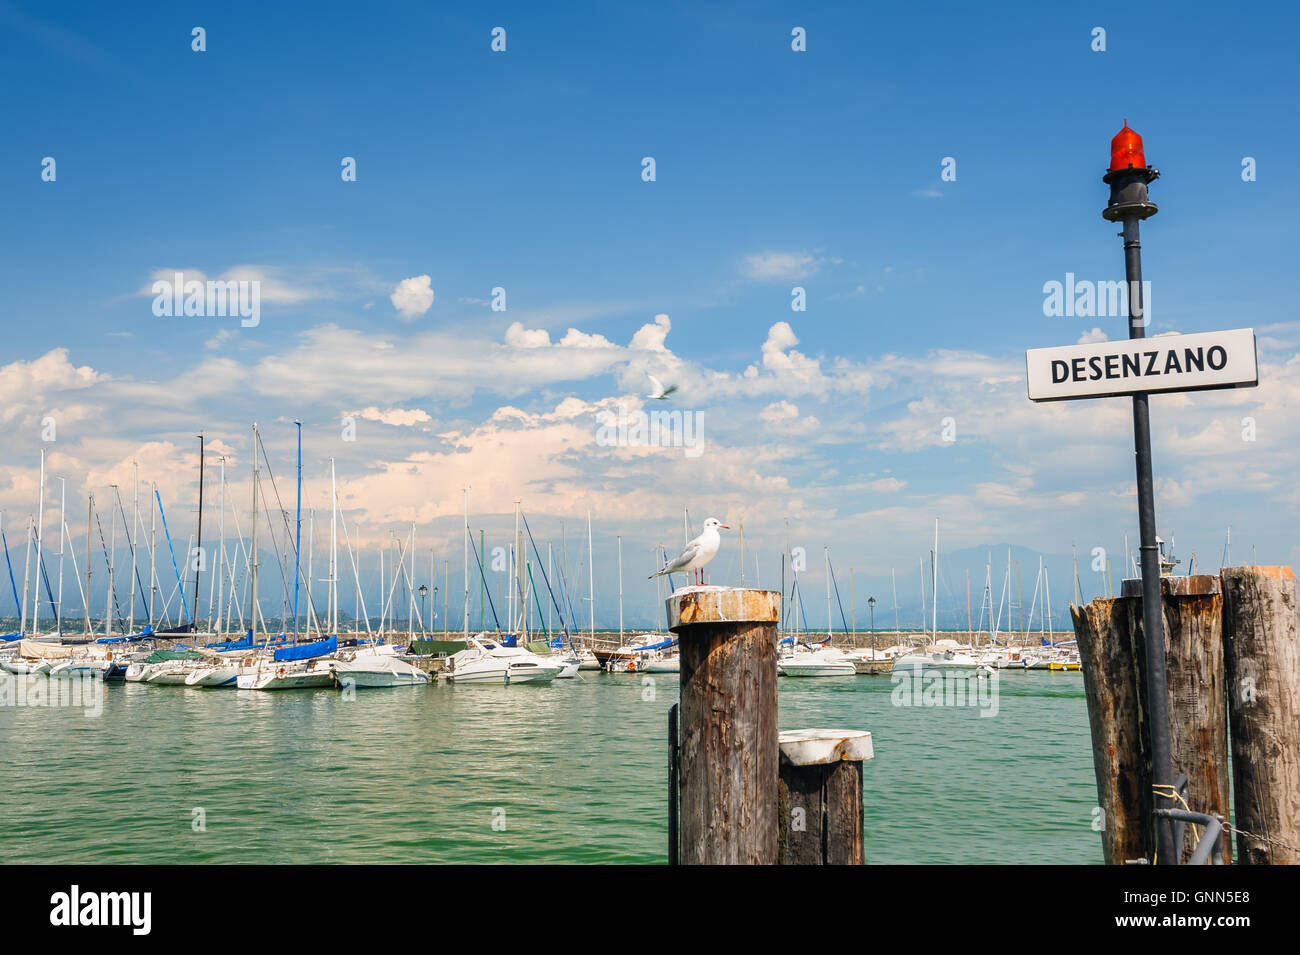 Piccole barche nel porto di Desenzano sul lago di Garda, Italia Foto Stock